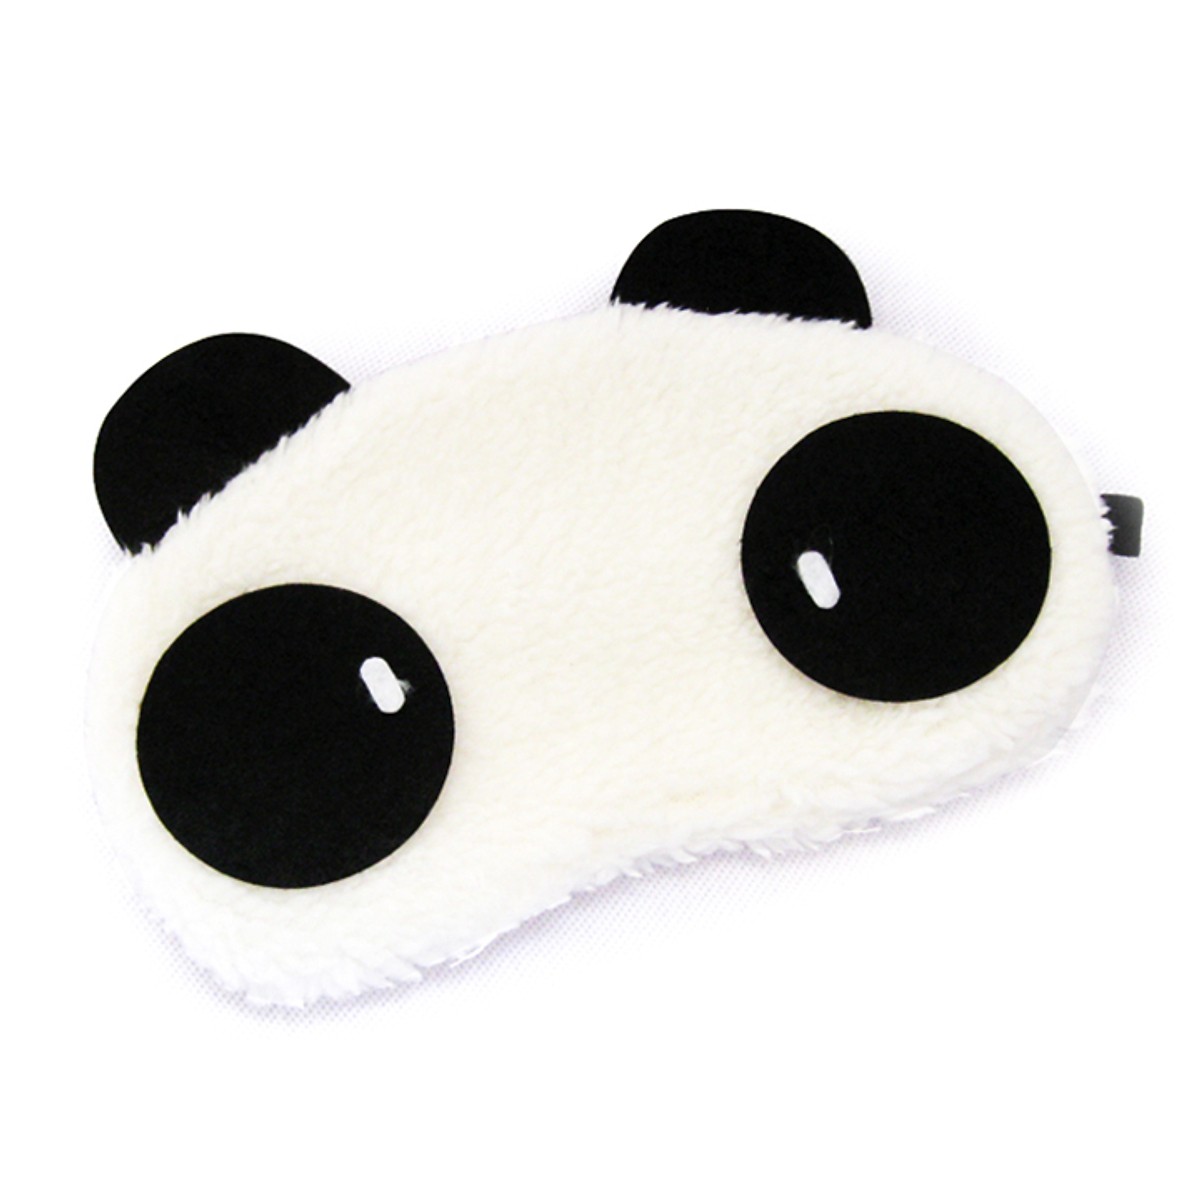 Tấm bịt mắt ngủ hình gấu panda dễ thương, chất liệu bông mềm mại